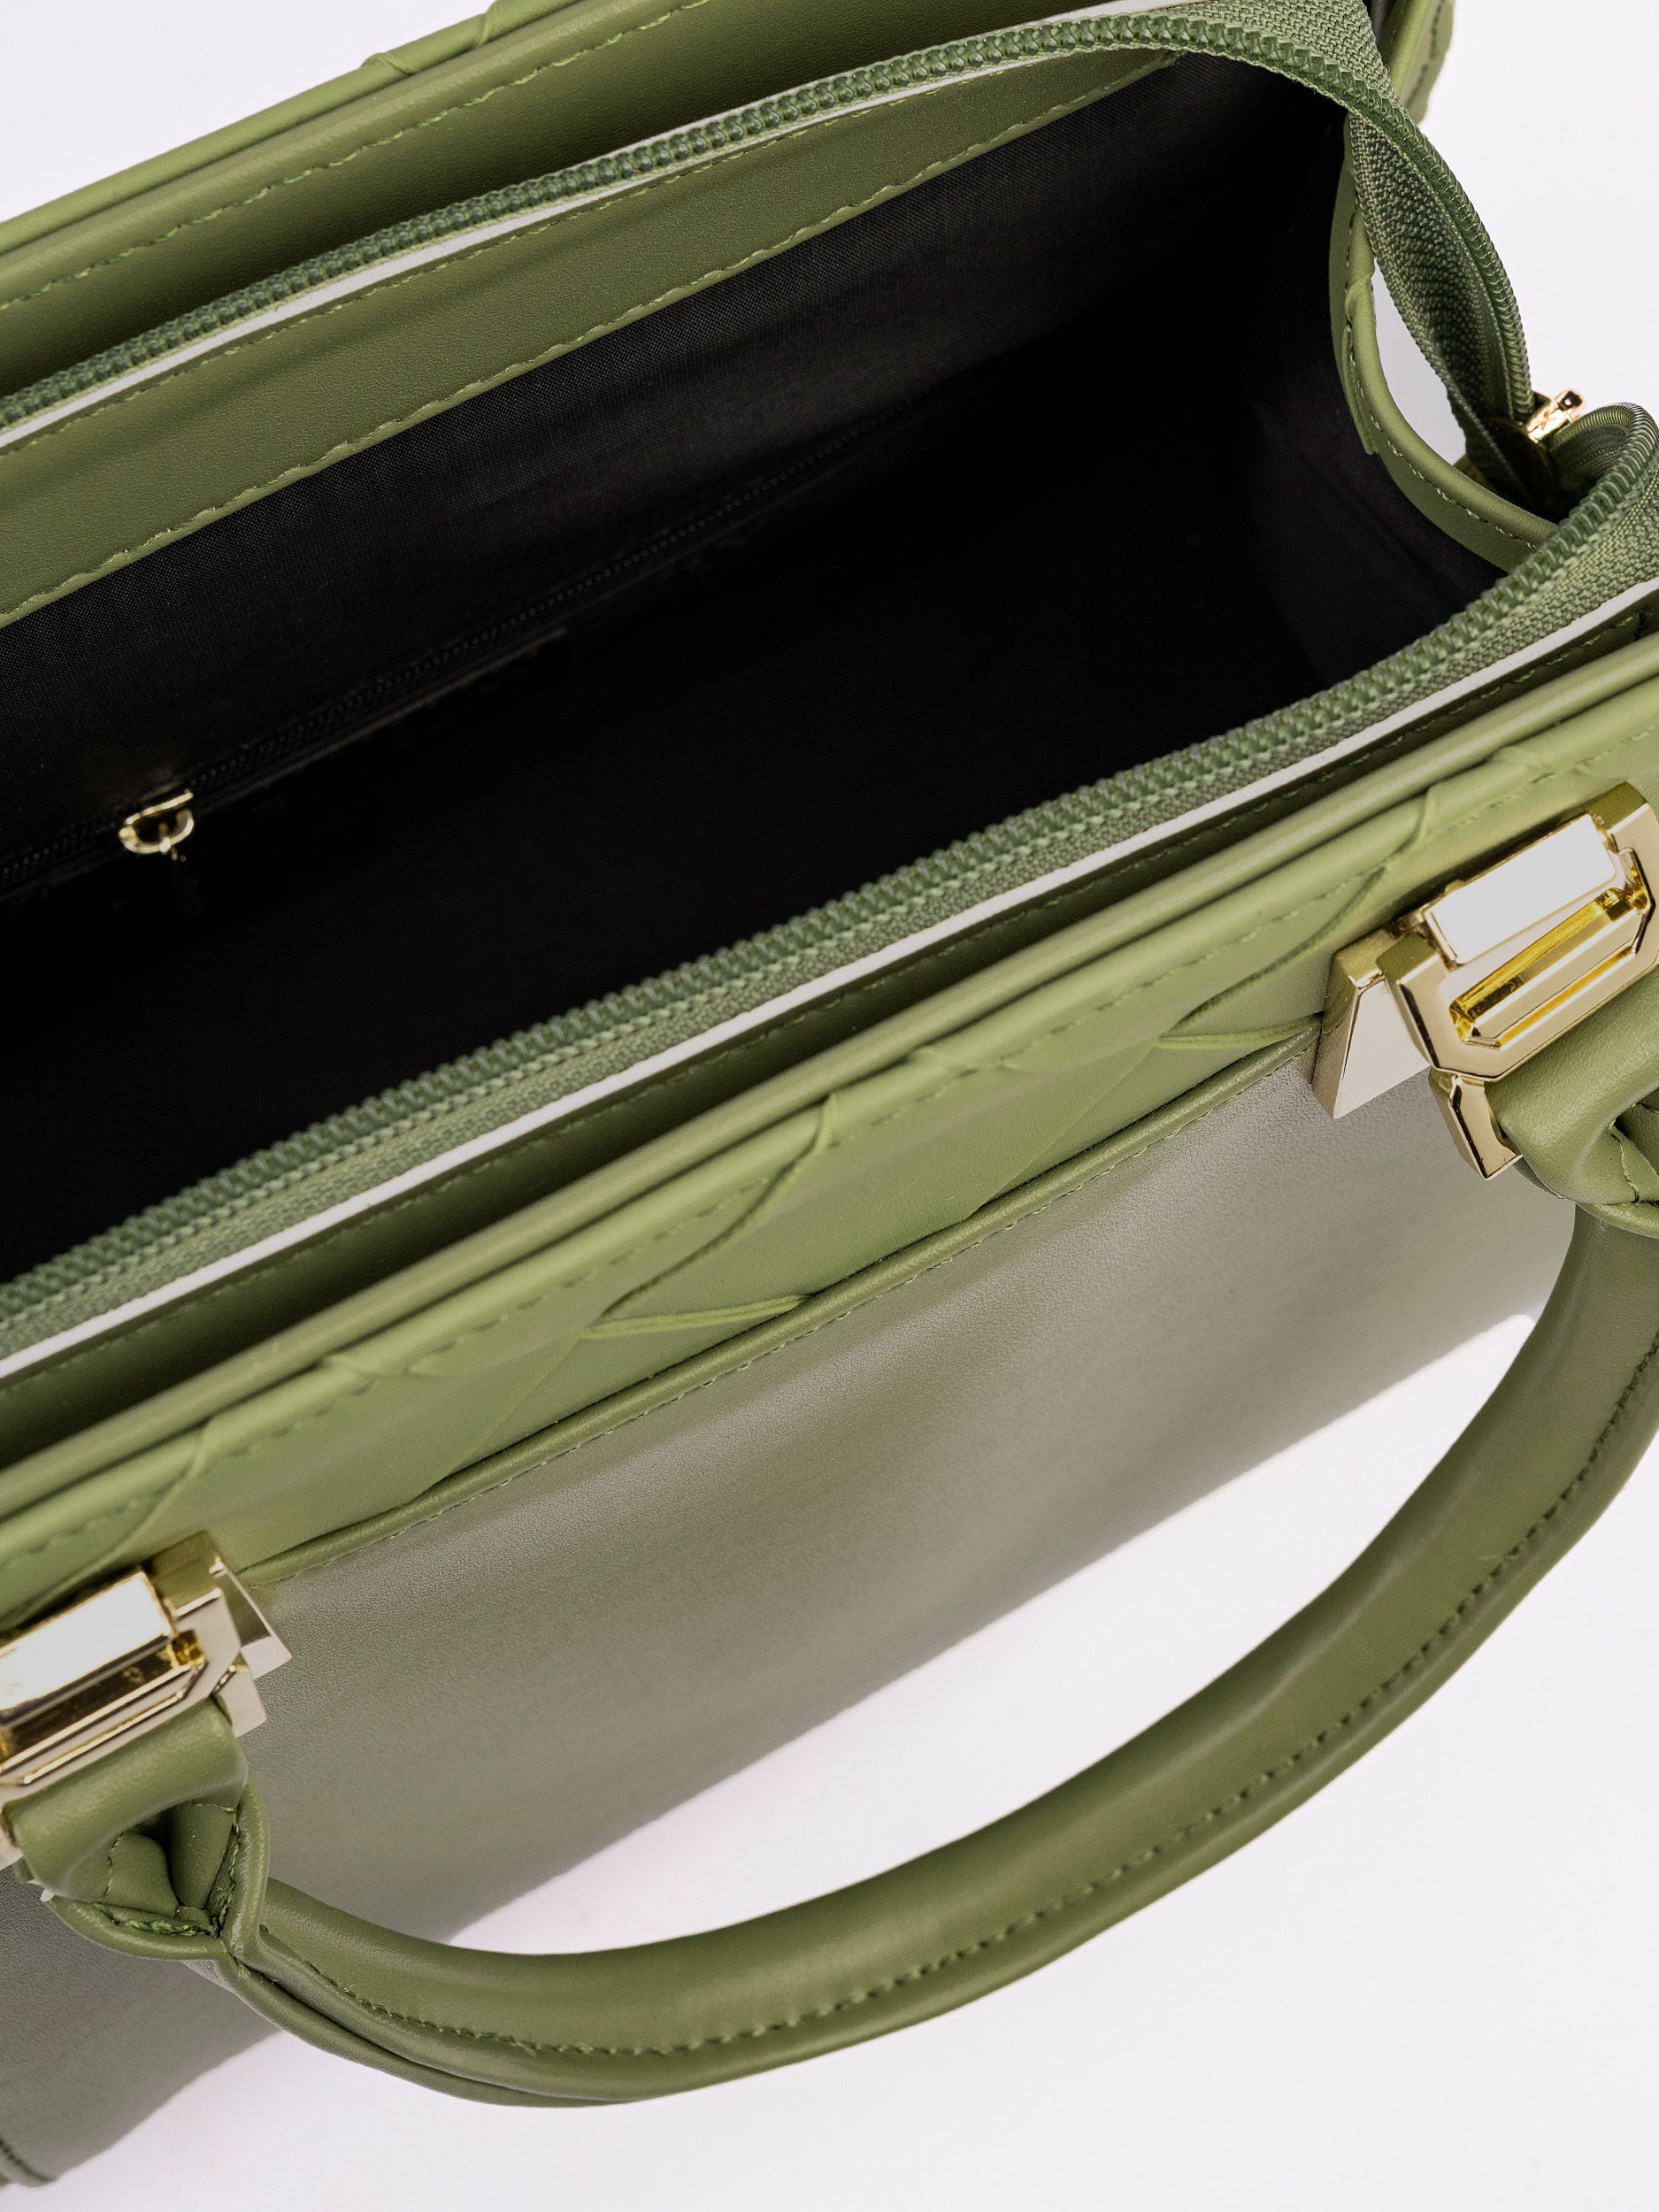 Criss Cross Patterned Handbag – Limelightpk